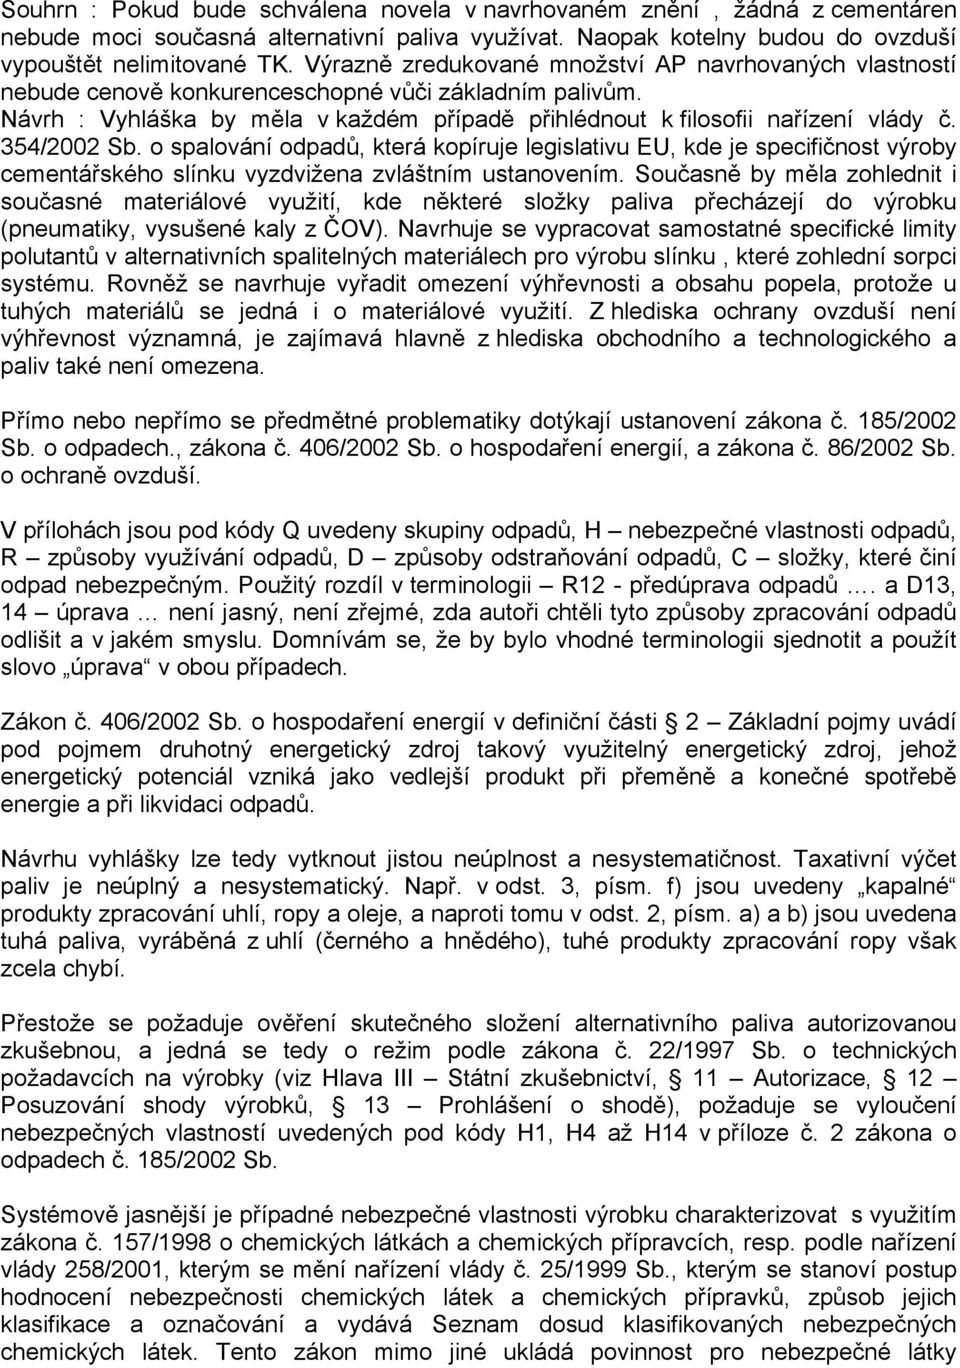 354/2002 Sb. o spalování odpadů, která kopíruje legislativu EU, kde je specifičnost výroby cementářského slínku vyzdvižena zvláštním ustanovením.